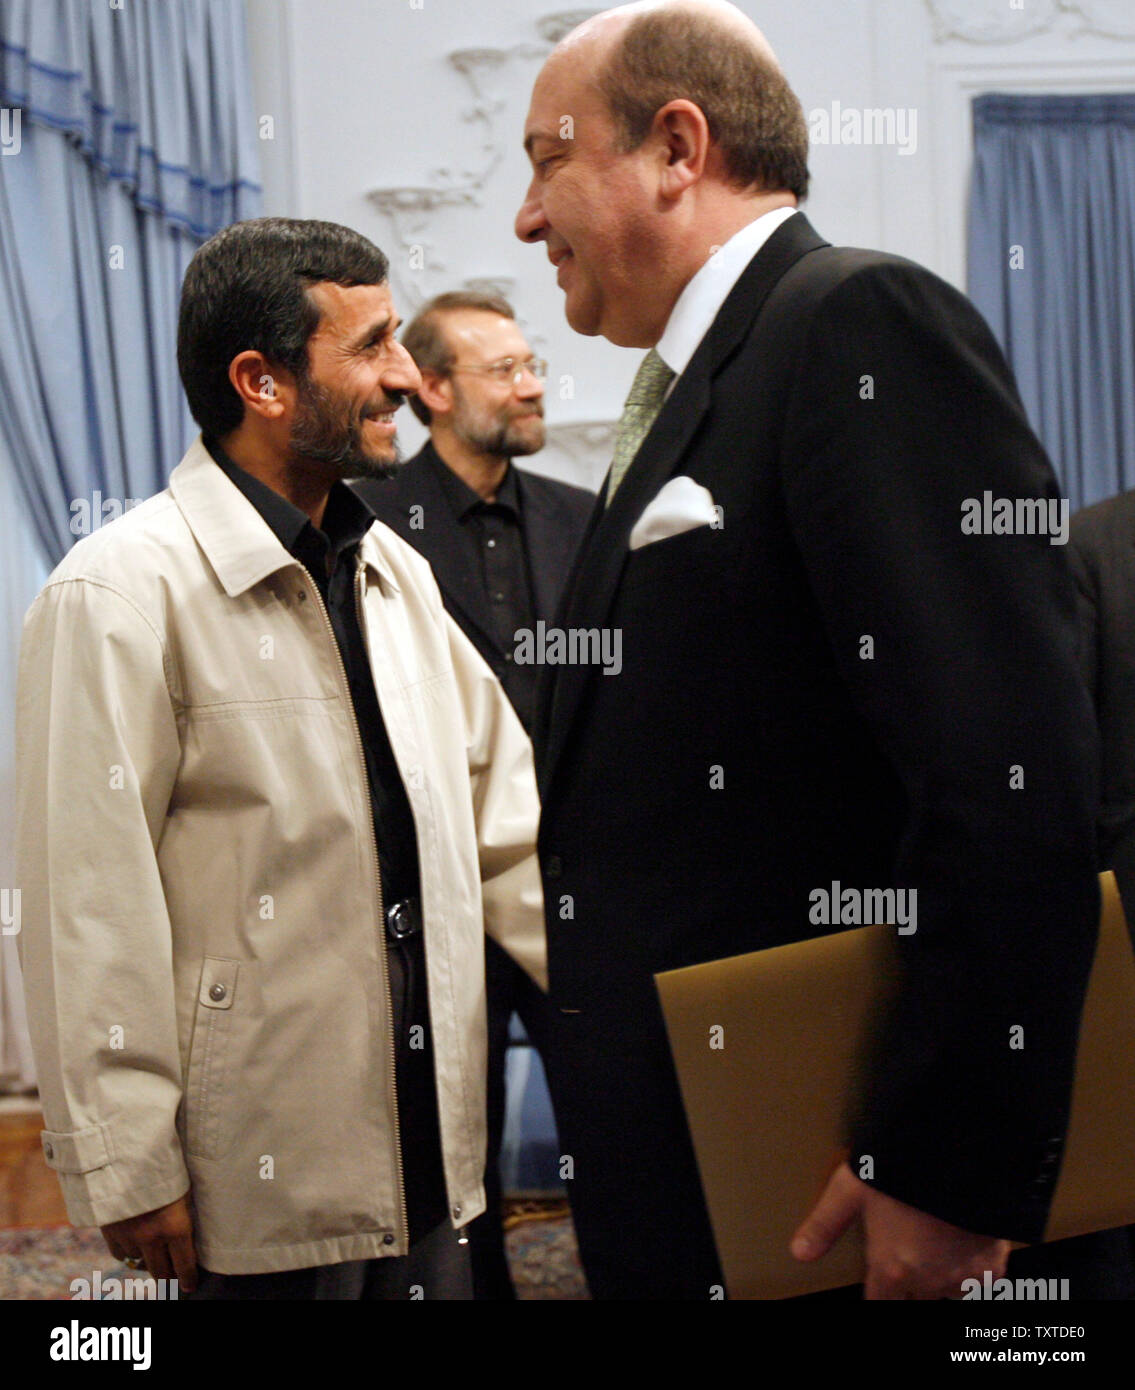 Le président iranien Mahmoud Ahmadinejad (G) accueille le secrétaire du Conseil de sécurité russe Igor Ivanov (R) tandis que négociateur en chef du nucléaire iranien Ali Larijani montres sur, au palais présidentiel à Téhéran, en Iran le 28 janvier 2007 (UPI/Photo) Banque D'Images